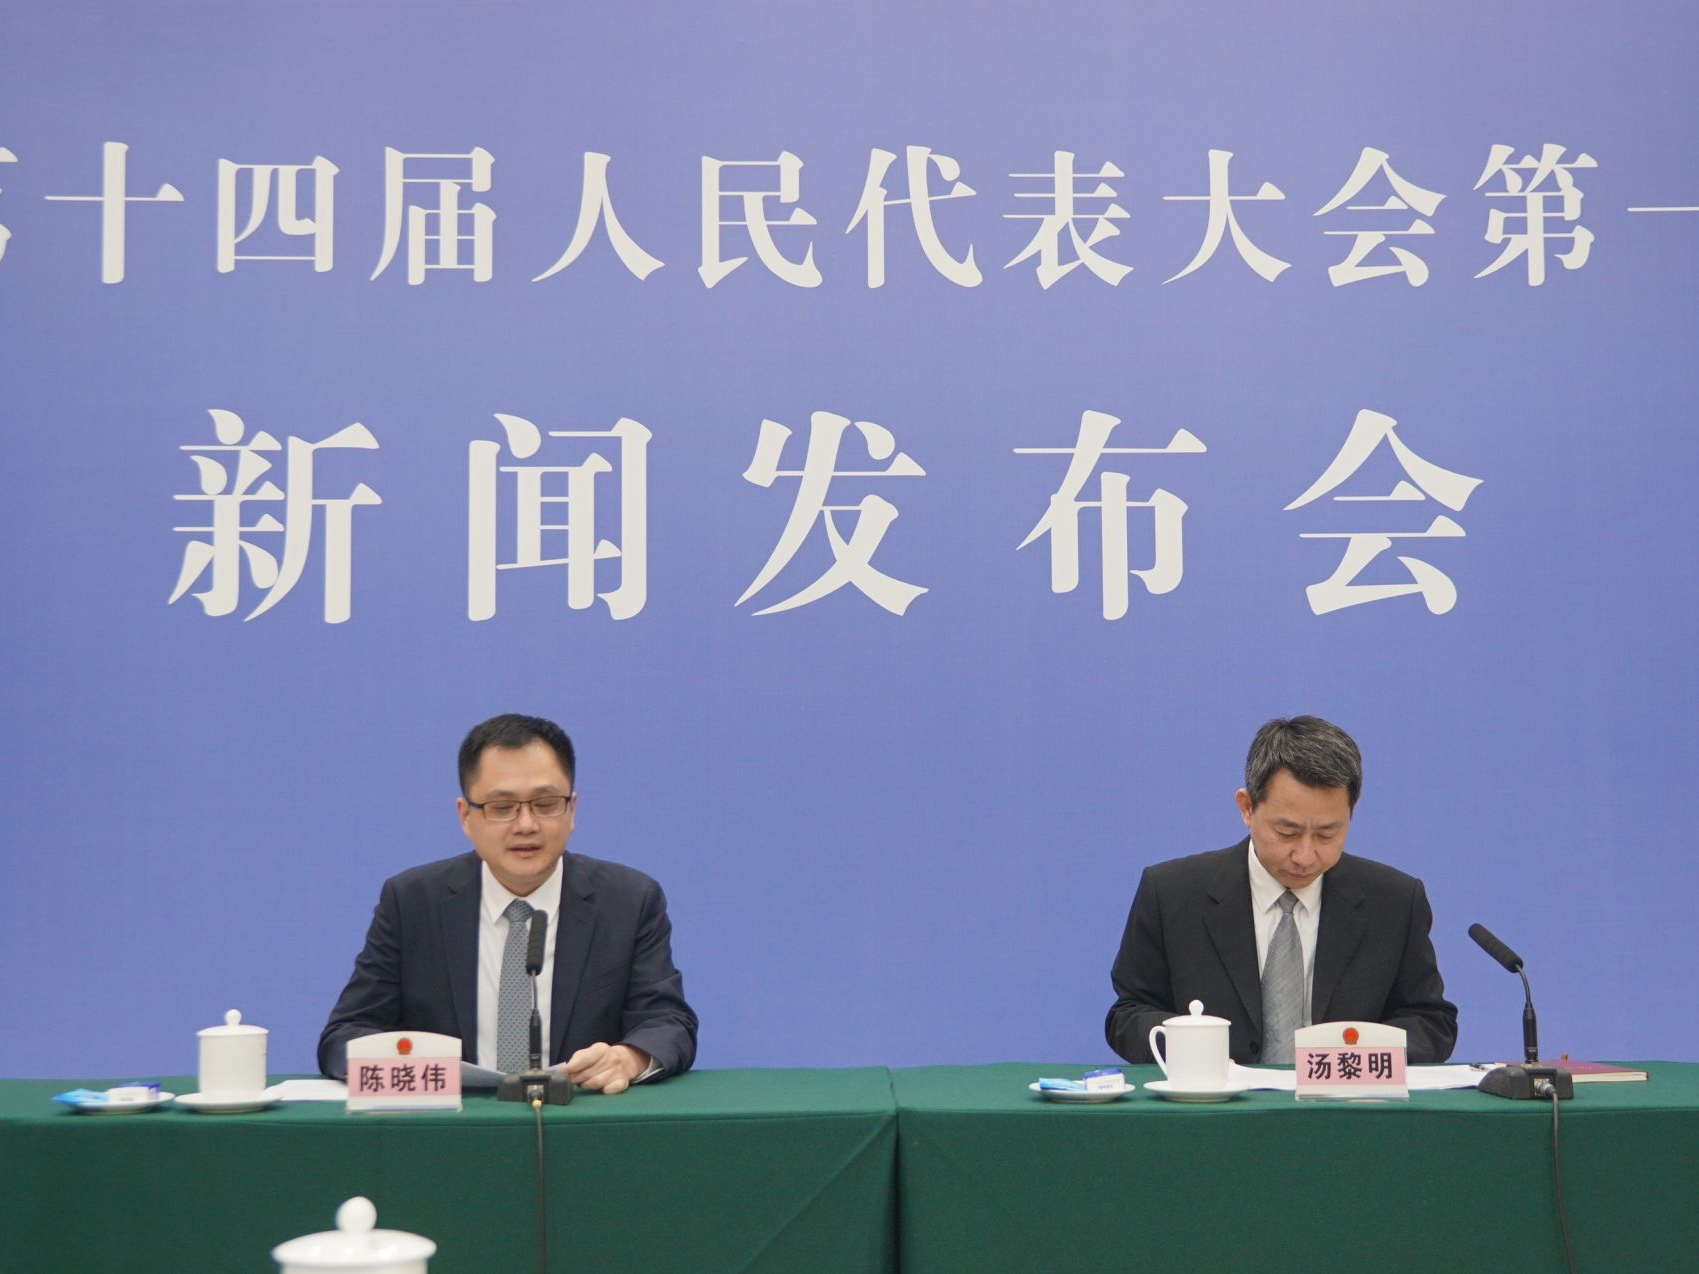 广东省十四届人大一次会议将于1月12日开幕